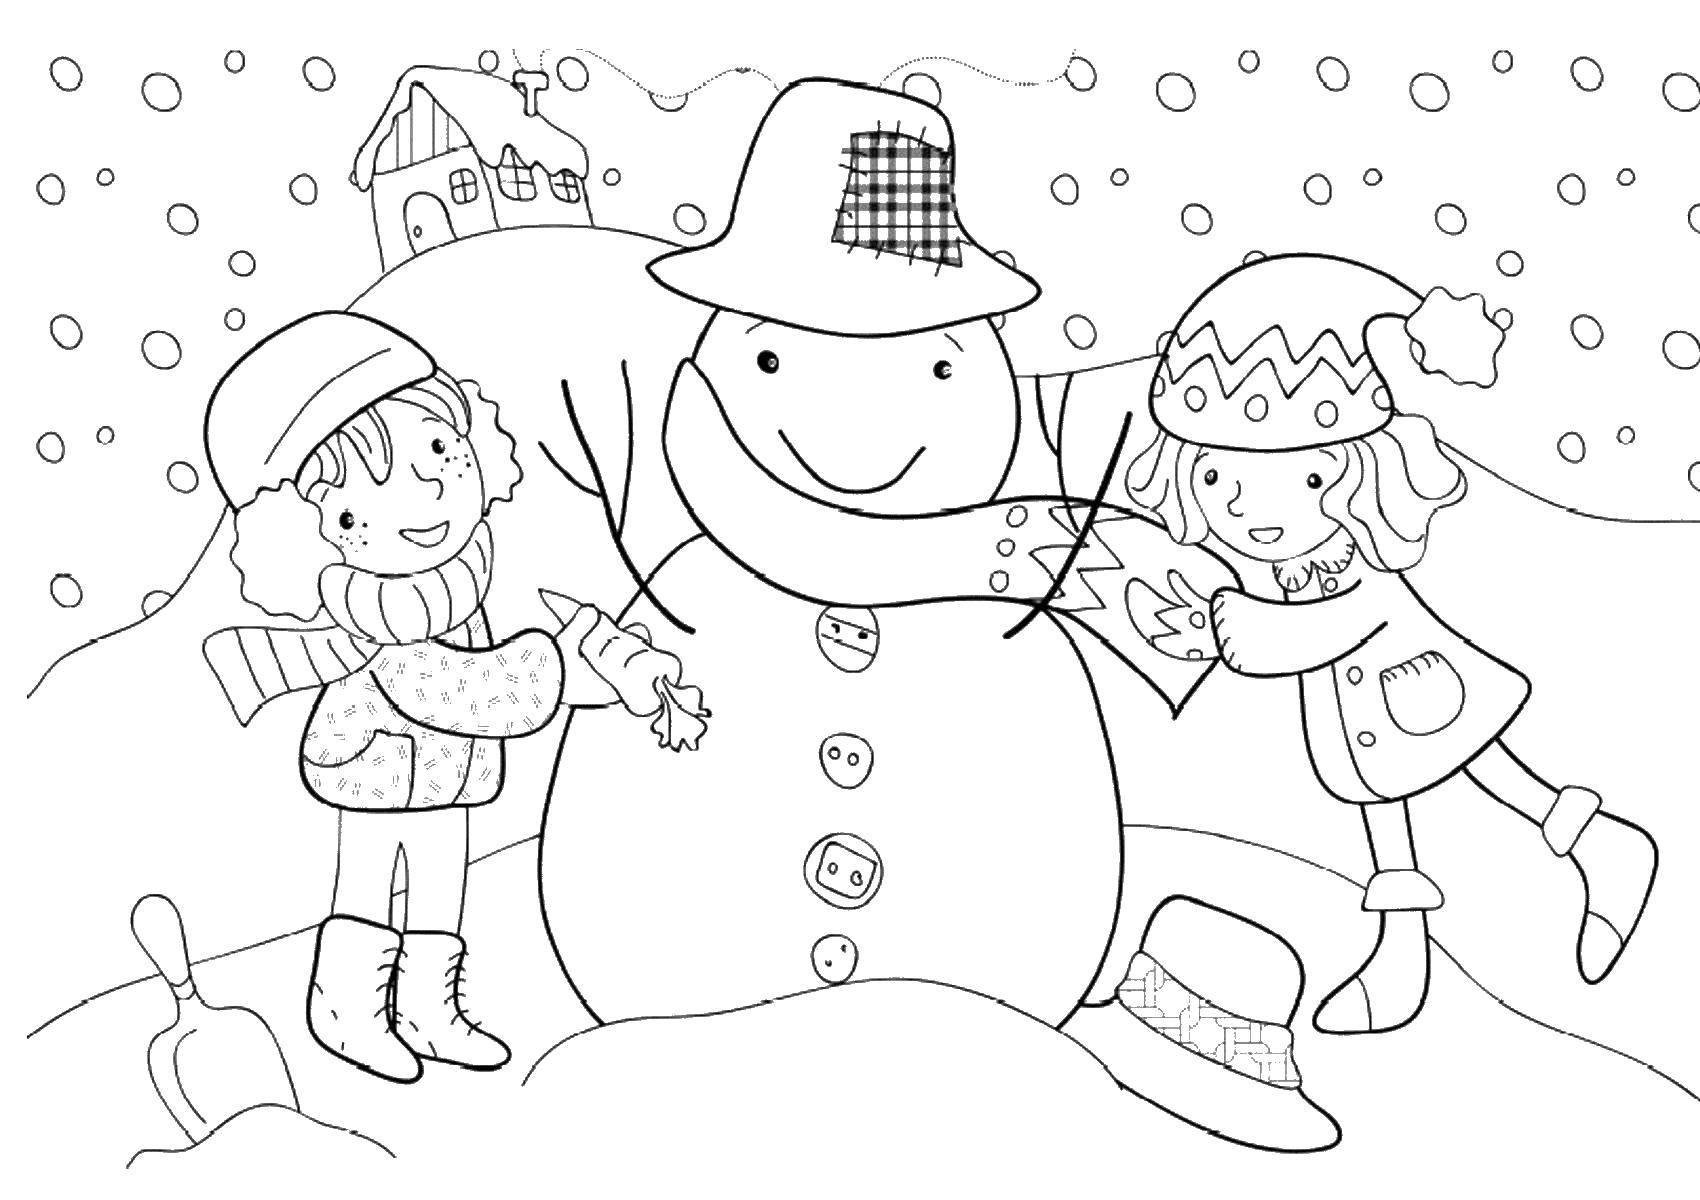 Раскраски подающий снег, снежинки, снега для детей, для занятий в начальной школе  Дети лепят снеговика